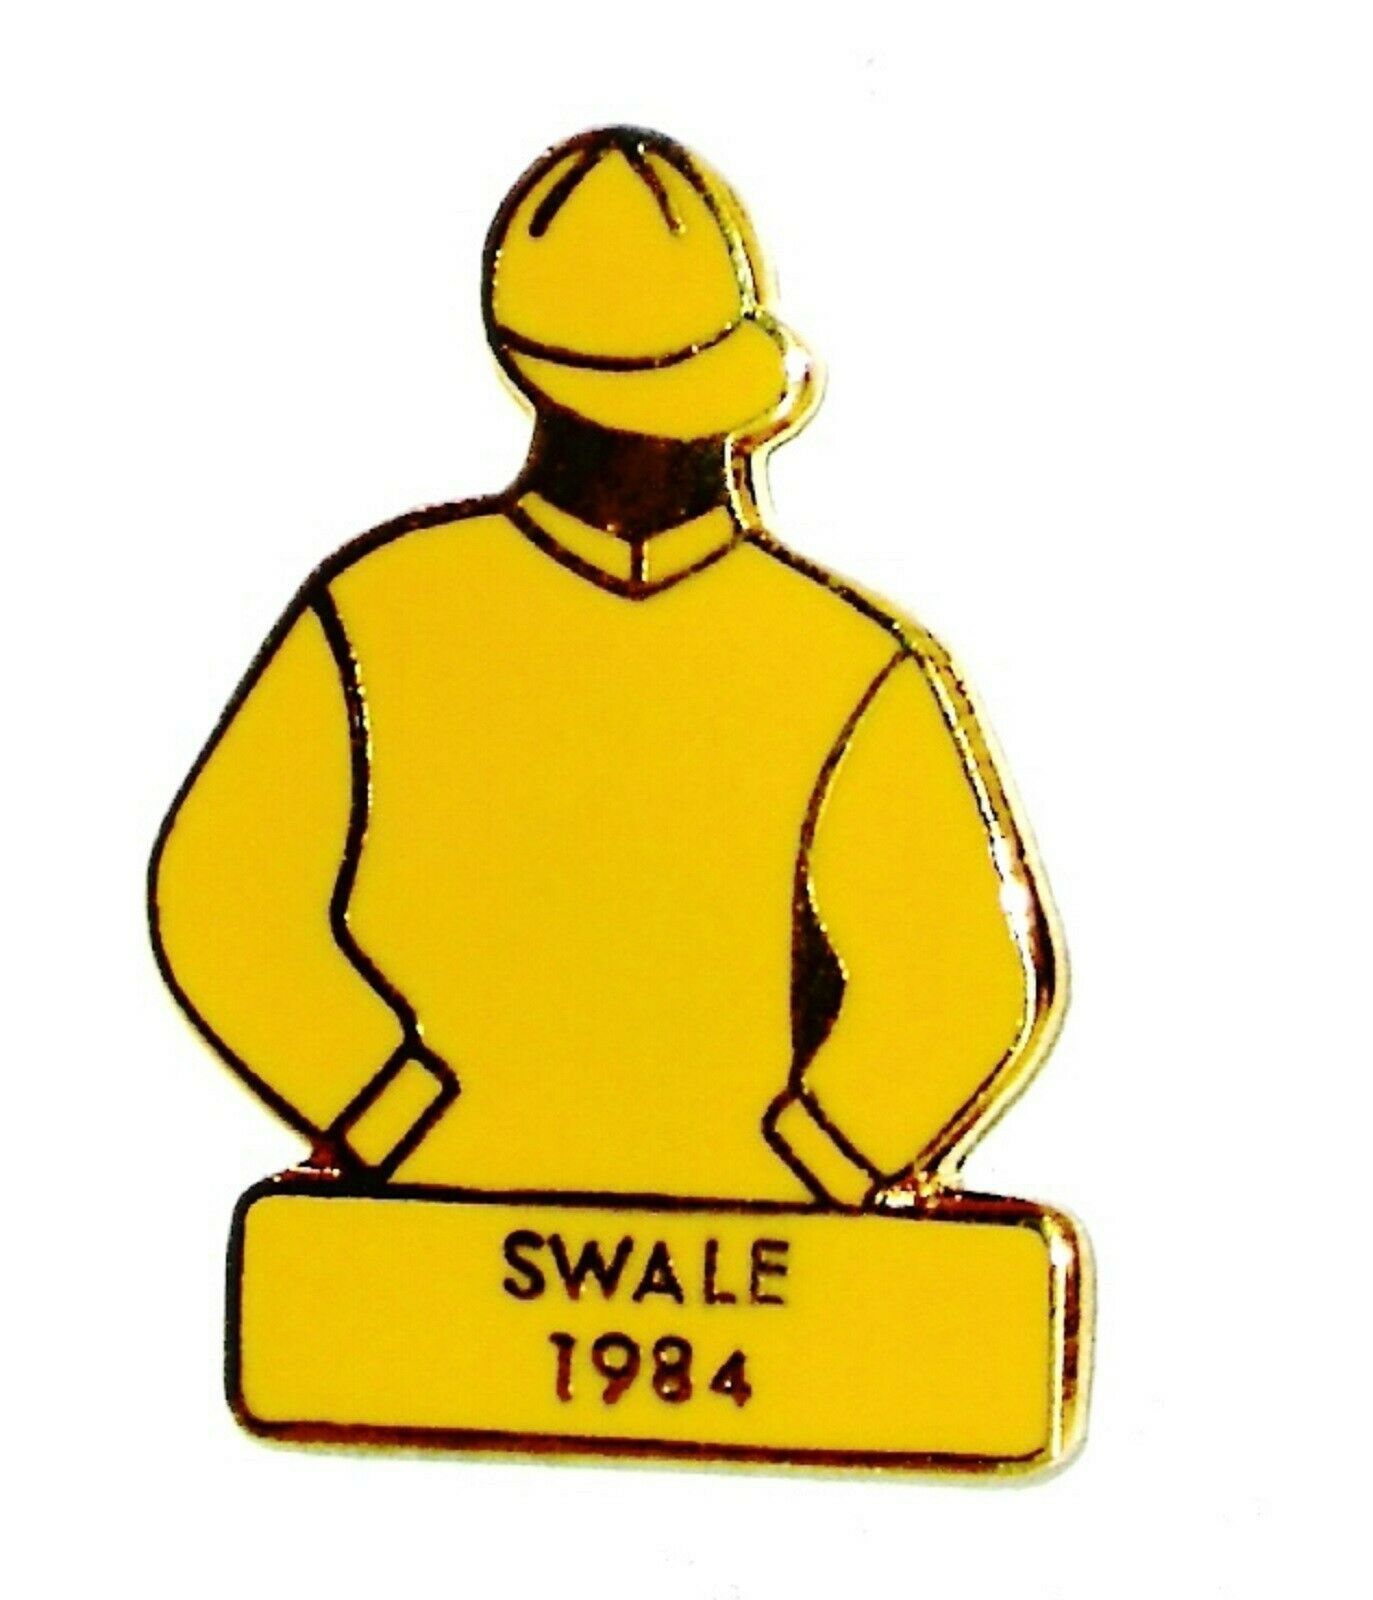 1984 SWALE Kentucky Derby Jockey Silks Pin Horse Racing